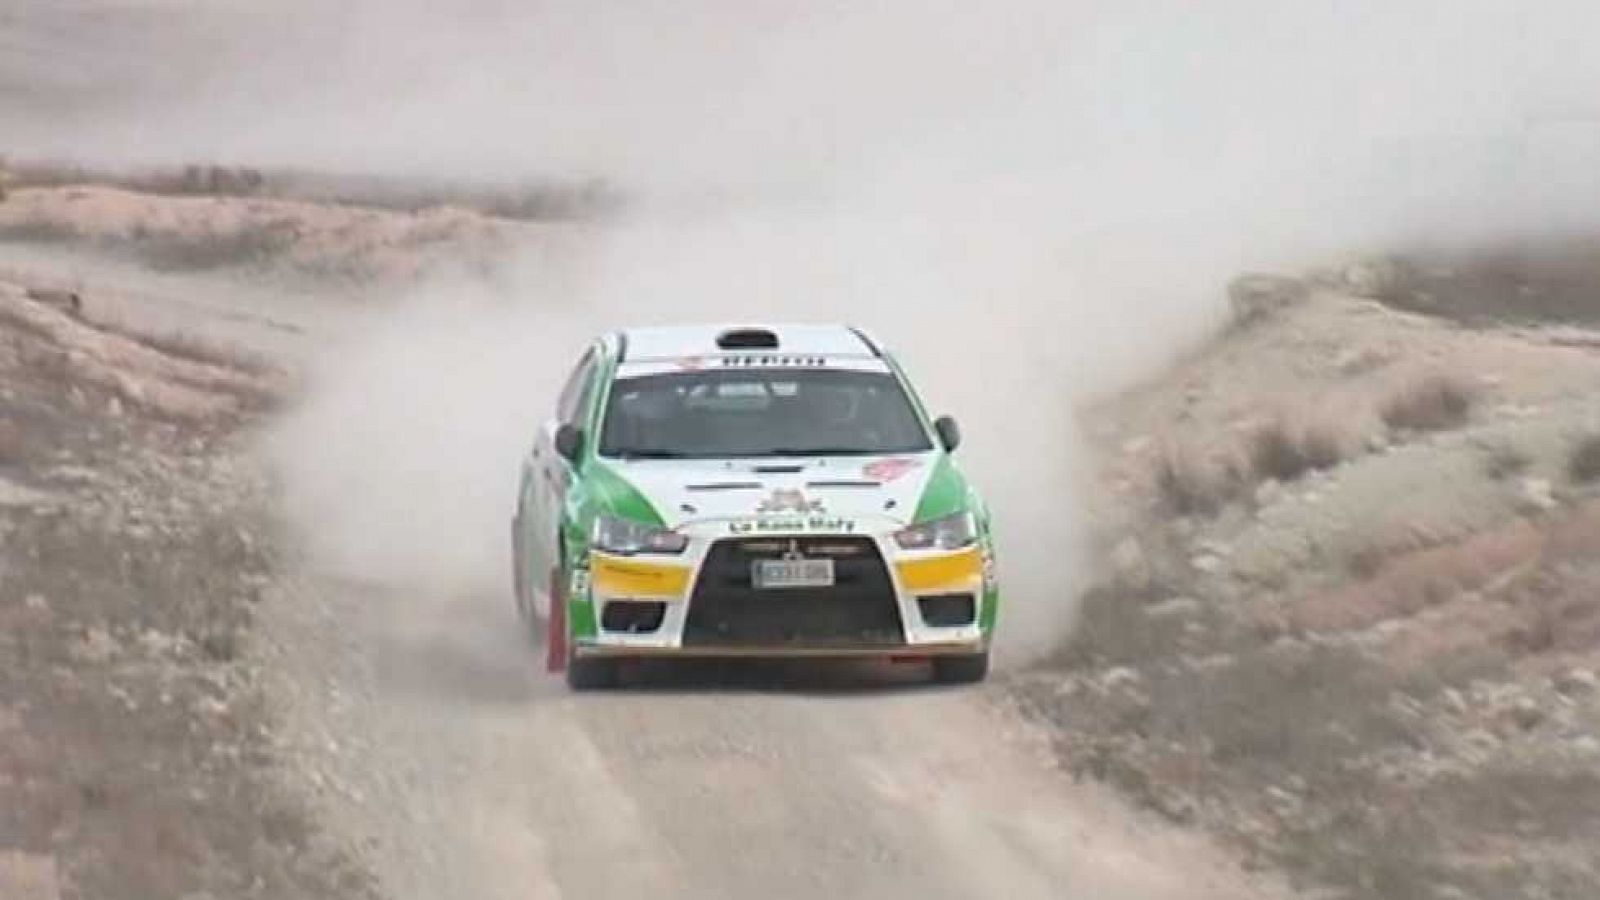 Automovilismo - Campeonato de España de Rallys Tierra: "Rallye Tierras Altas de Lorca"